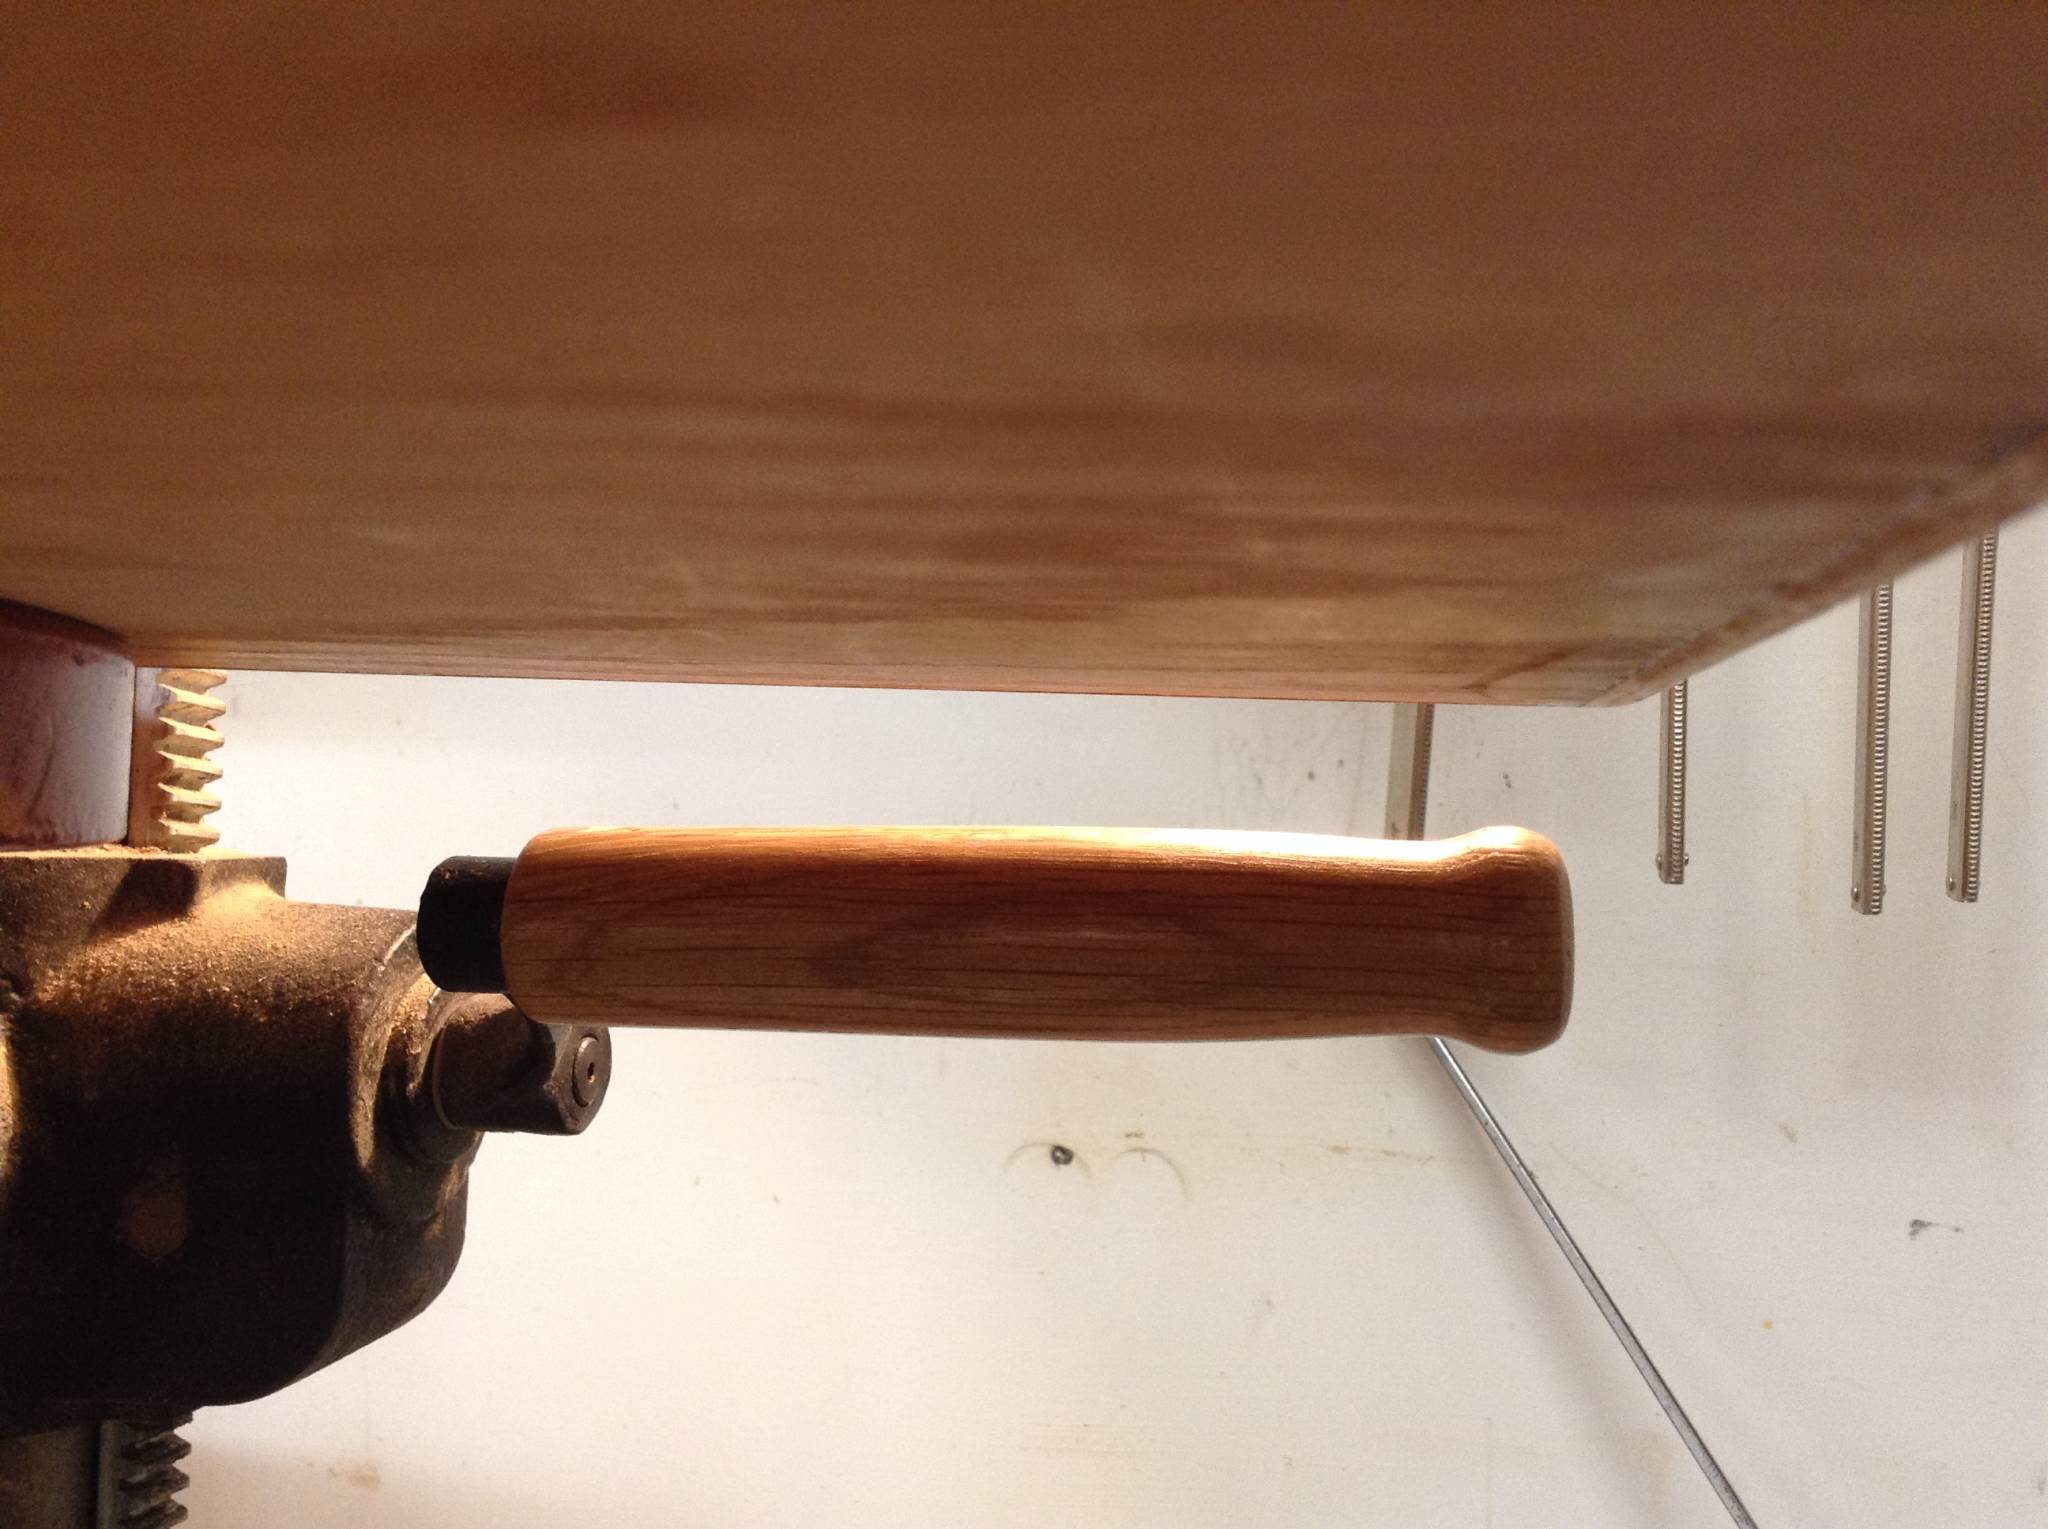 Drill press crank handle